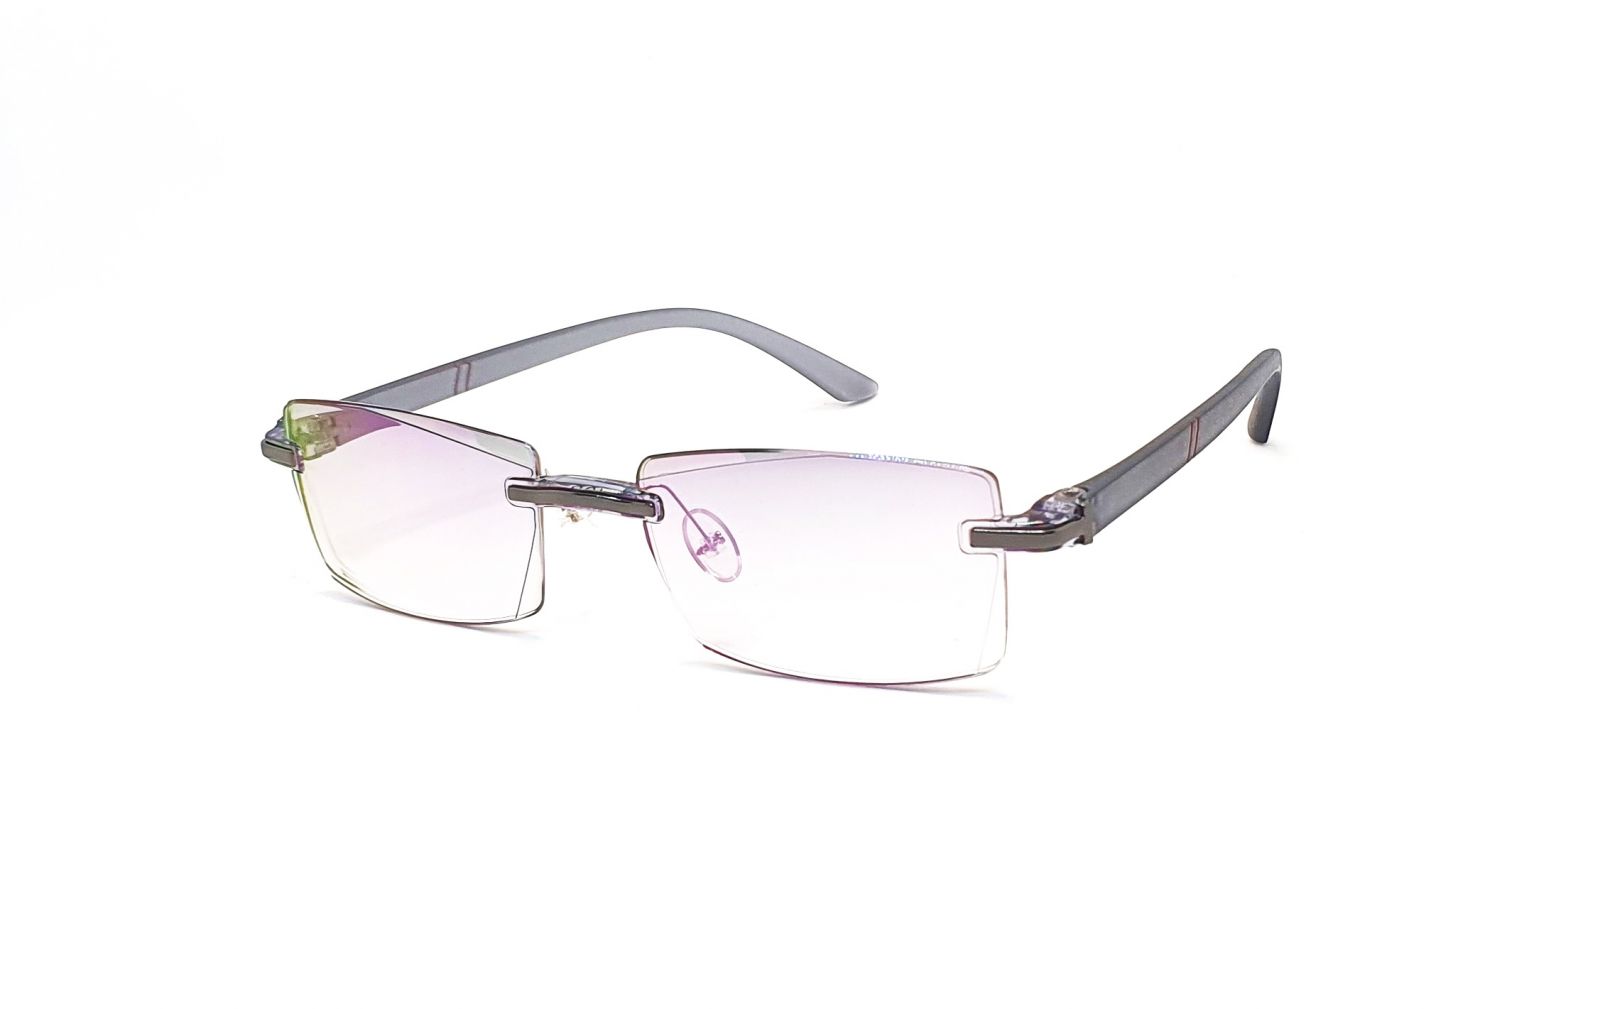 Bezrámečkové dioptrické brýle 346 / -4,50 s antireflexní vrstvou